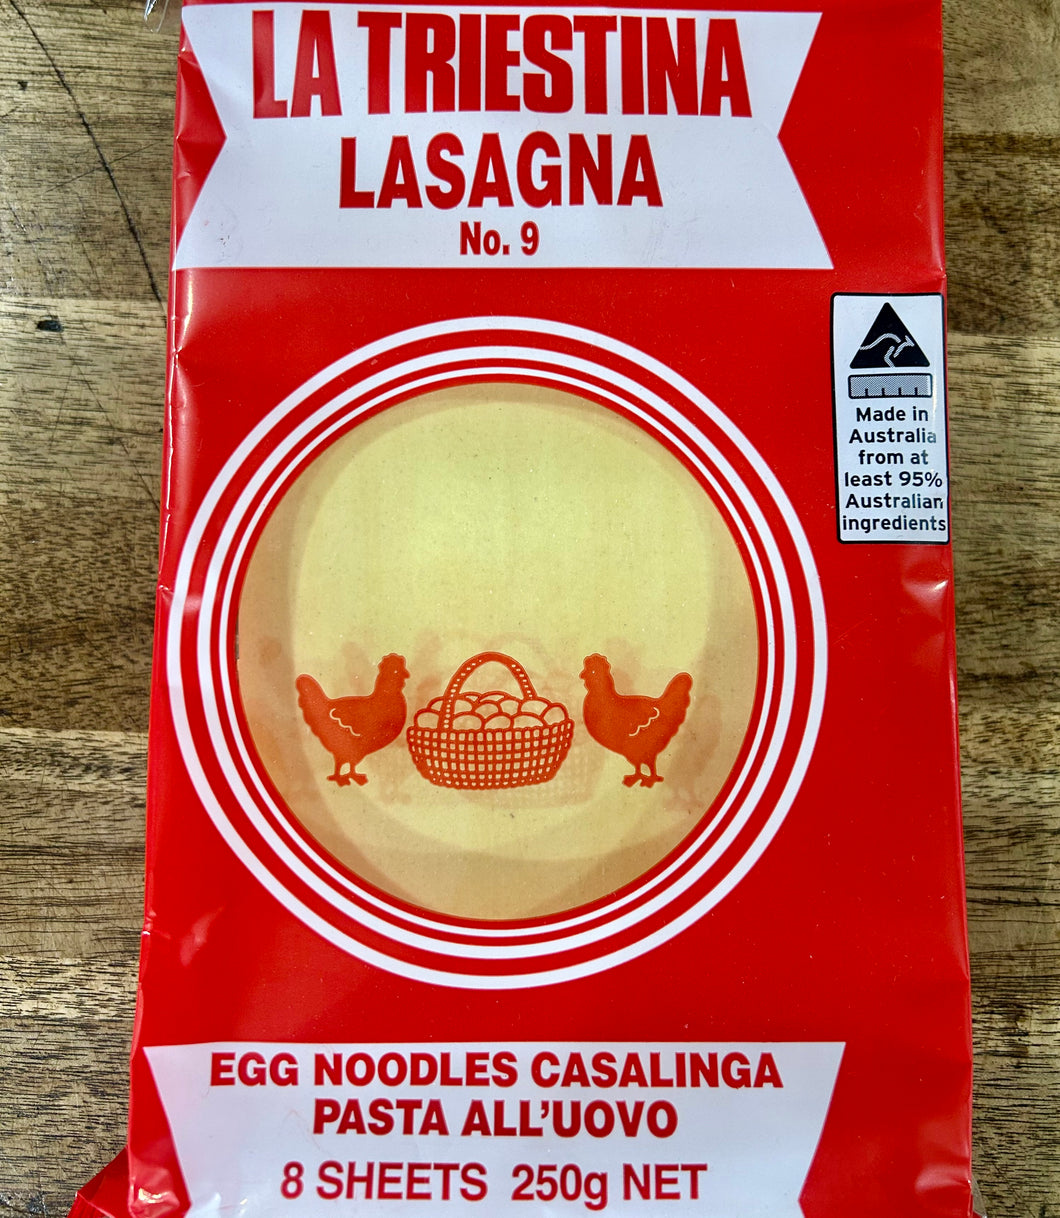 La Treistina egg lasagna sheets 250g